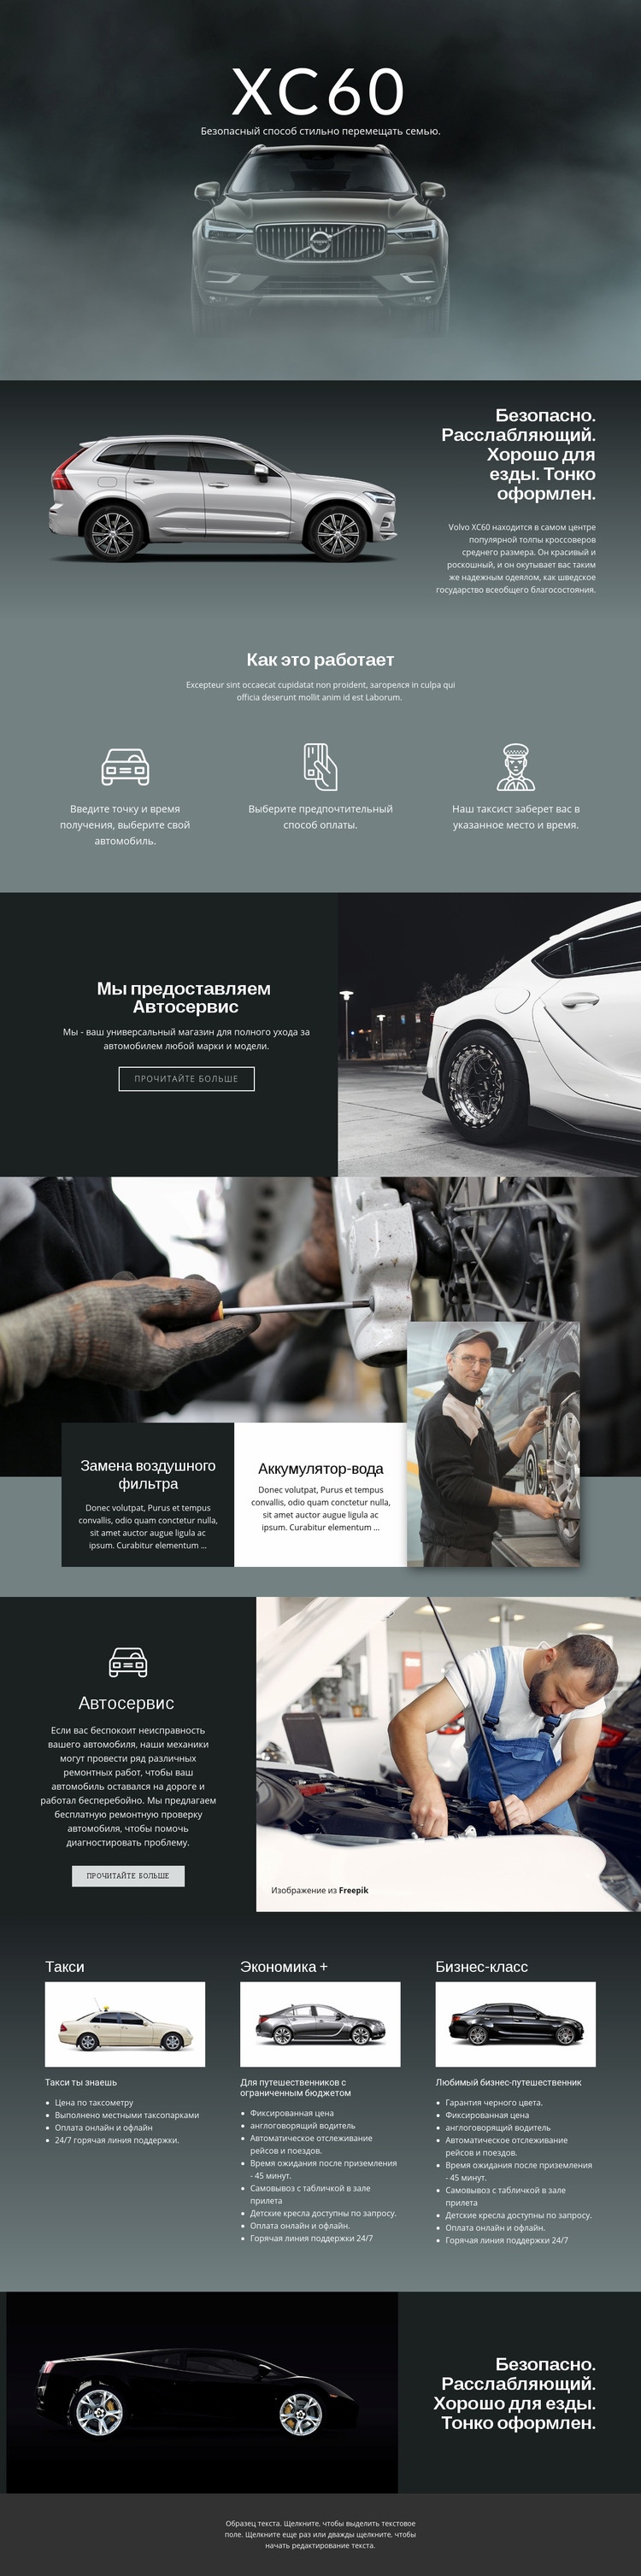 Volvo XC60 внедорожник WordPress тема